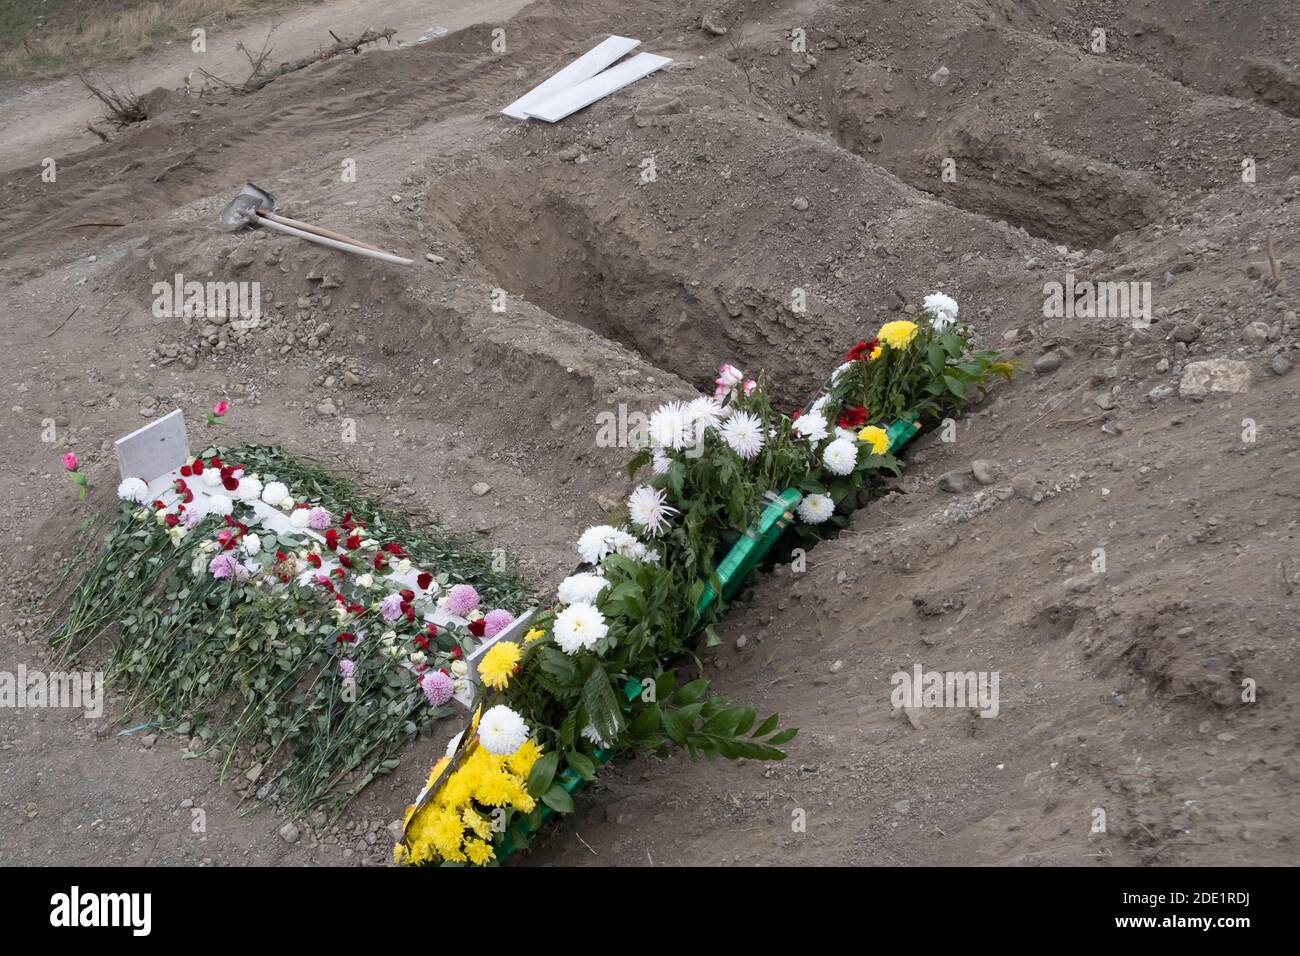 STEPANAKERT, NAGORNO KARABAKH - NOVEMBRE 05: I fiori adornano la tomba di un membro del servizio ucciso in combattimento durante un conflitto militare tra le forze armene e azerbaigiane in un cimitero militare in Stepanakert la capitale de facto dell'autoproclamata Repubblica di Artsakh o Nagorno-Karabakh il 05 novembre 2020. I combattimenti tra Armenia e Azerbaigian sul Nagorno-Karabakh, noto anche come Repubblica Artsakh, sono riesplose alla fine di settembre in una guerra di sei settimane con entrambi i paesi accusandosi reciprocamente di provocazioni che hanno lasciato migliaia di morti. Foto Stock